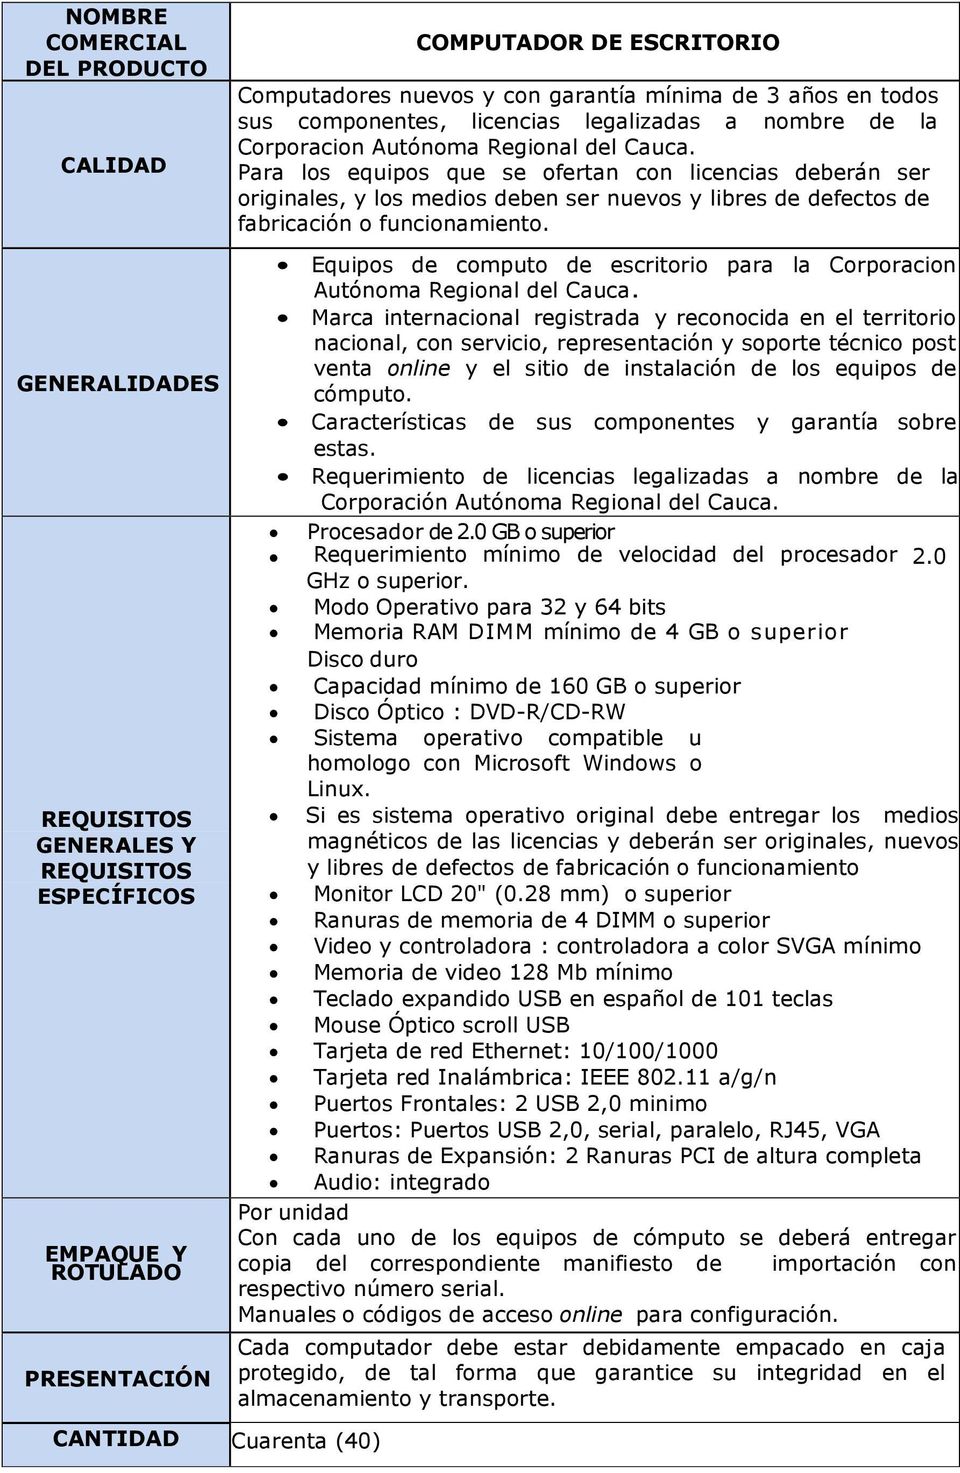 Equipos de computo de escritorio para la Corporacion Autónoma Regional del Cauca.